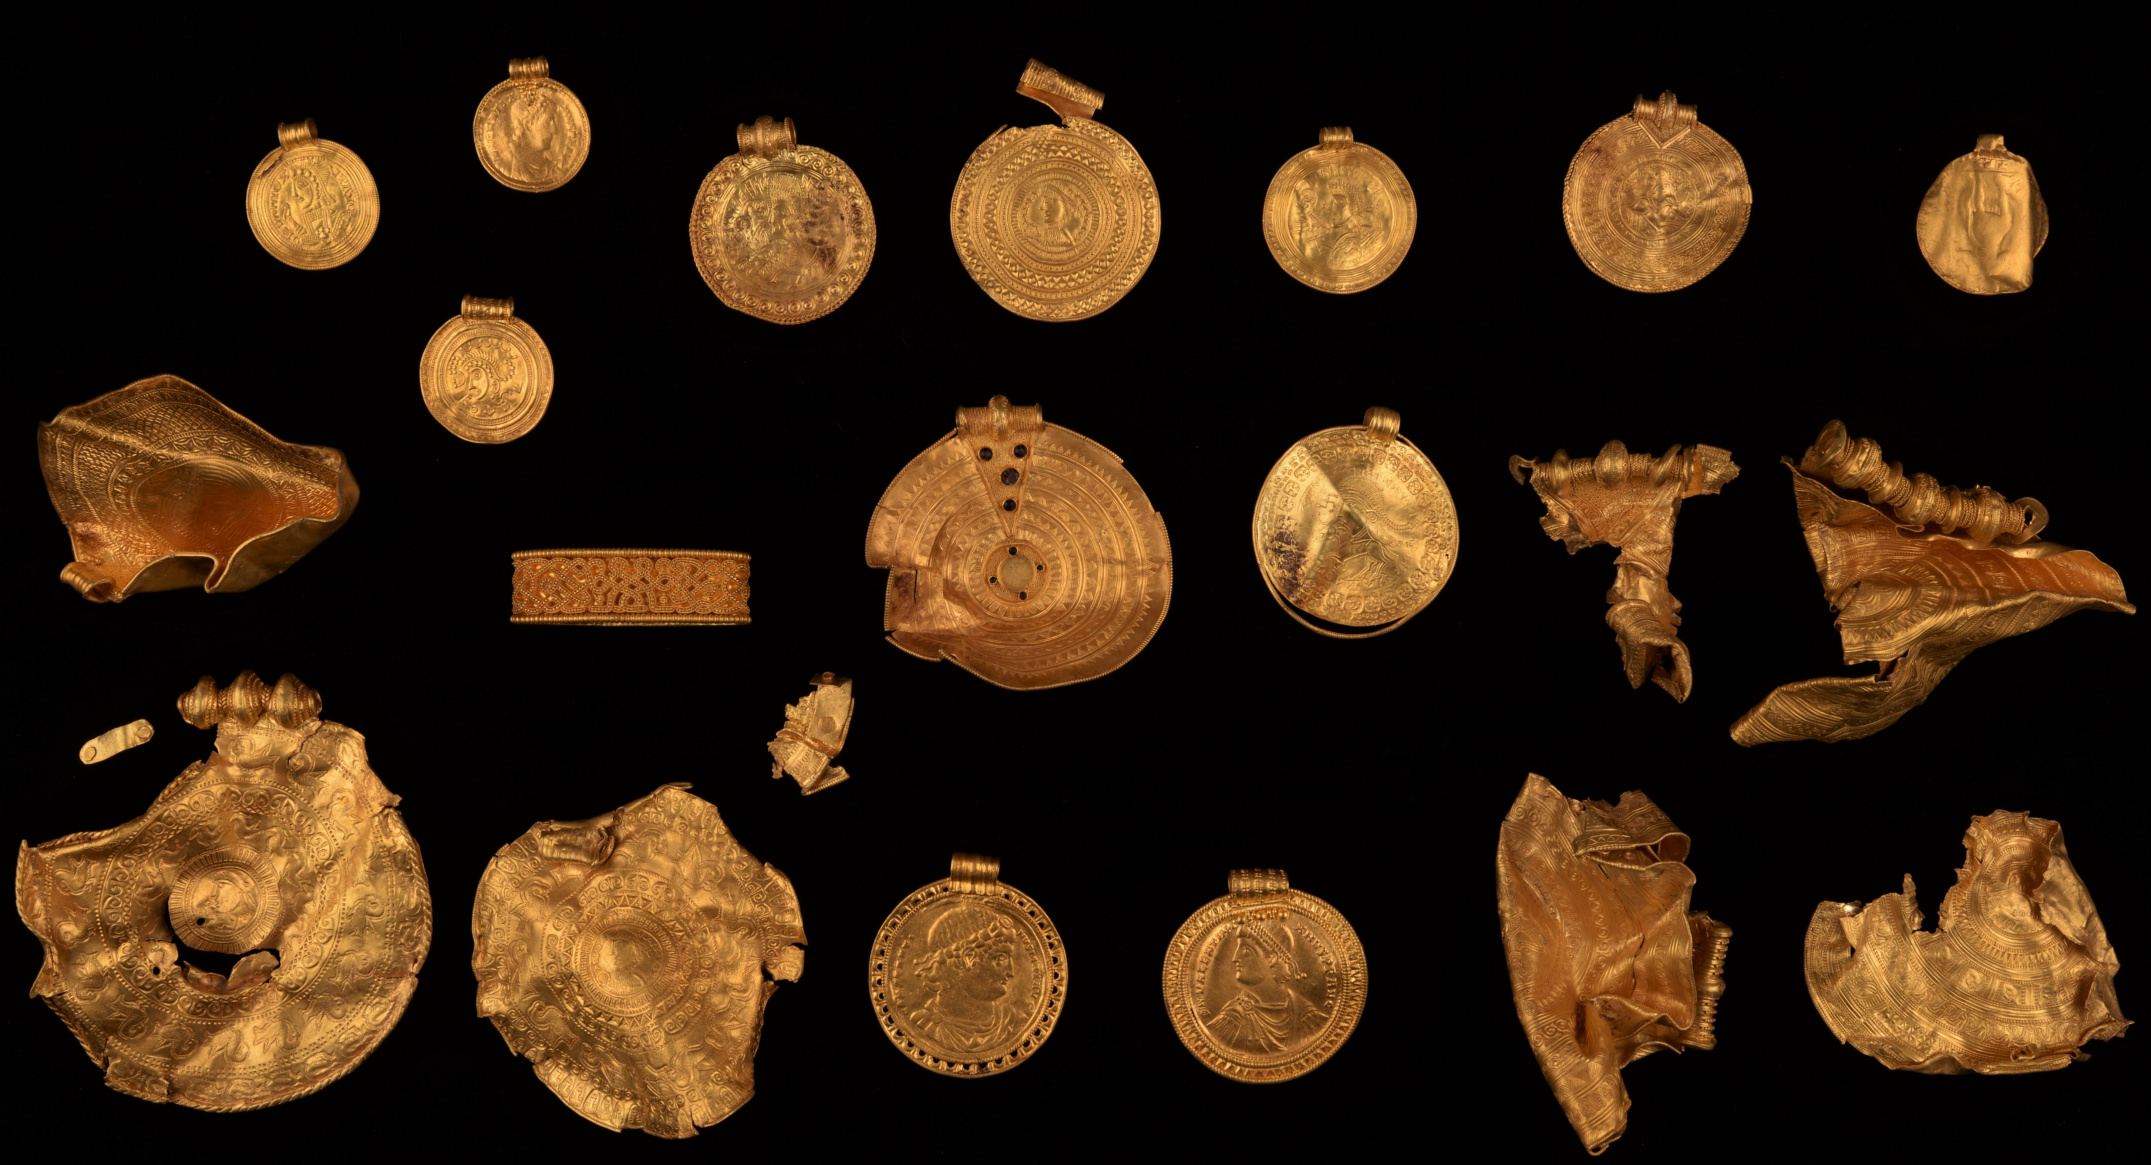 Il bratteato faceva parte di un tesoro sepolto di Vindelev di oggetti d'oro, alcuni dei quali risalenti al V secolo d.C., che è stato portato alla luce nella parte orientale della regione danese dello Jutland nel 2021.